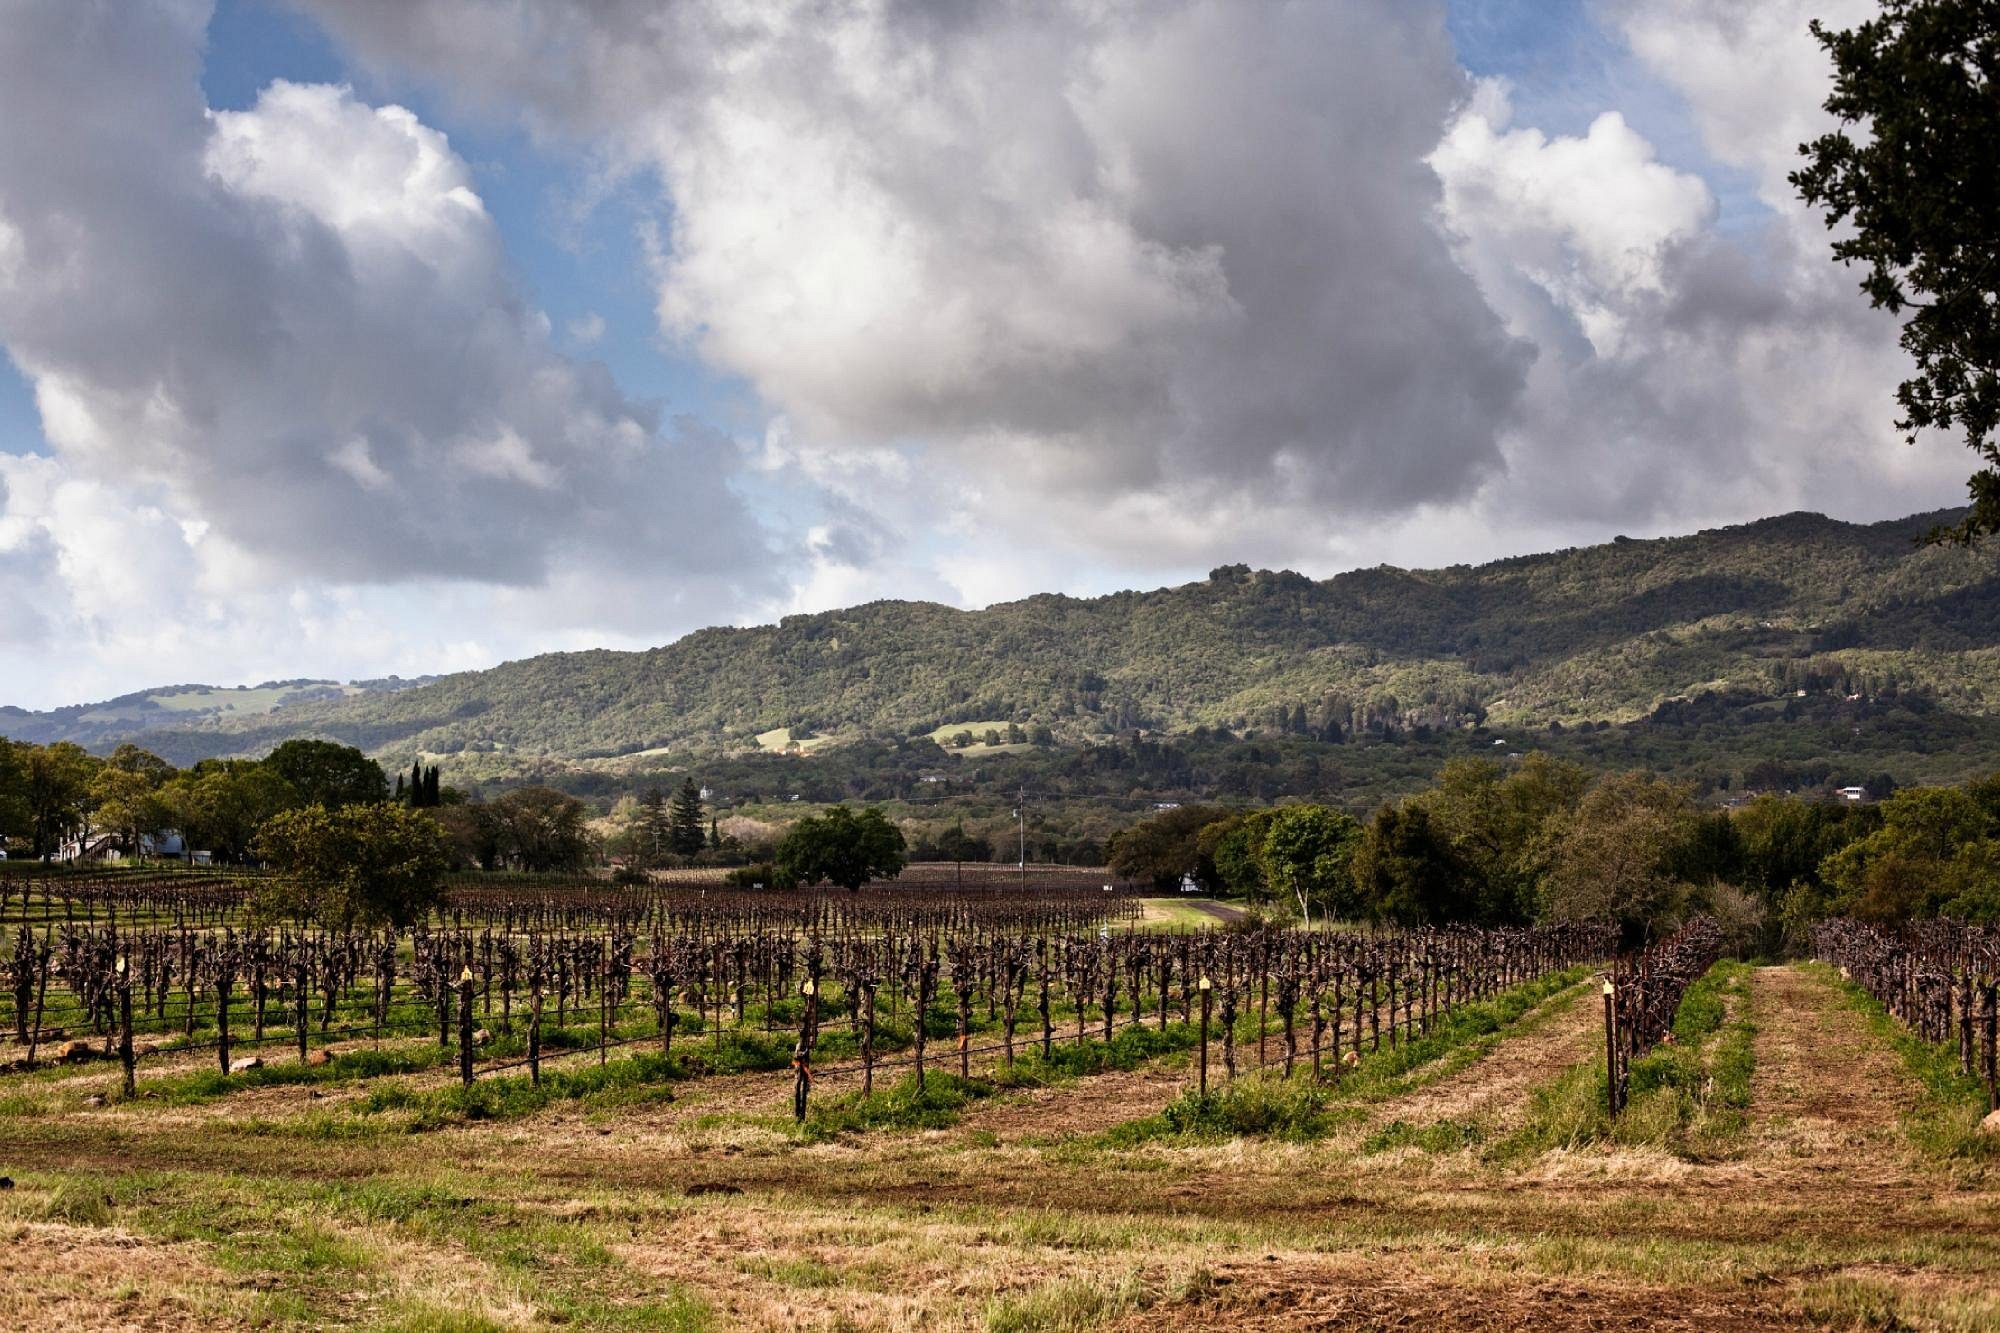 Le 12 migliori aziende vinicole della Napa Valley da visitare ora 